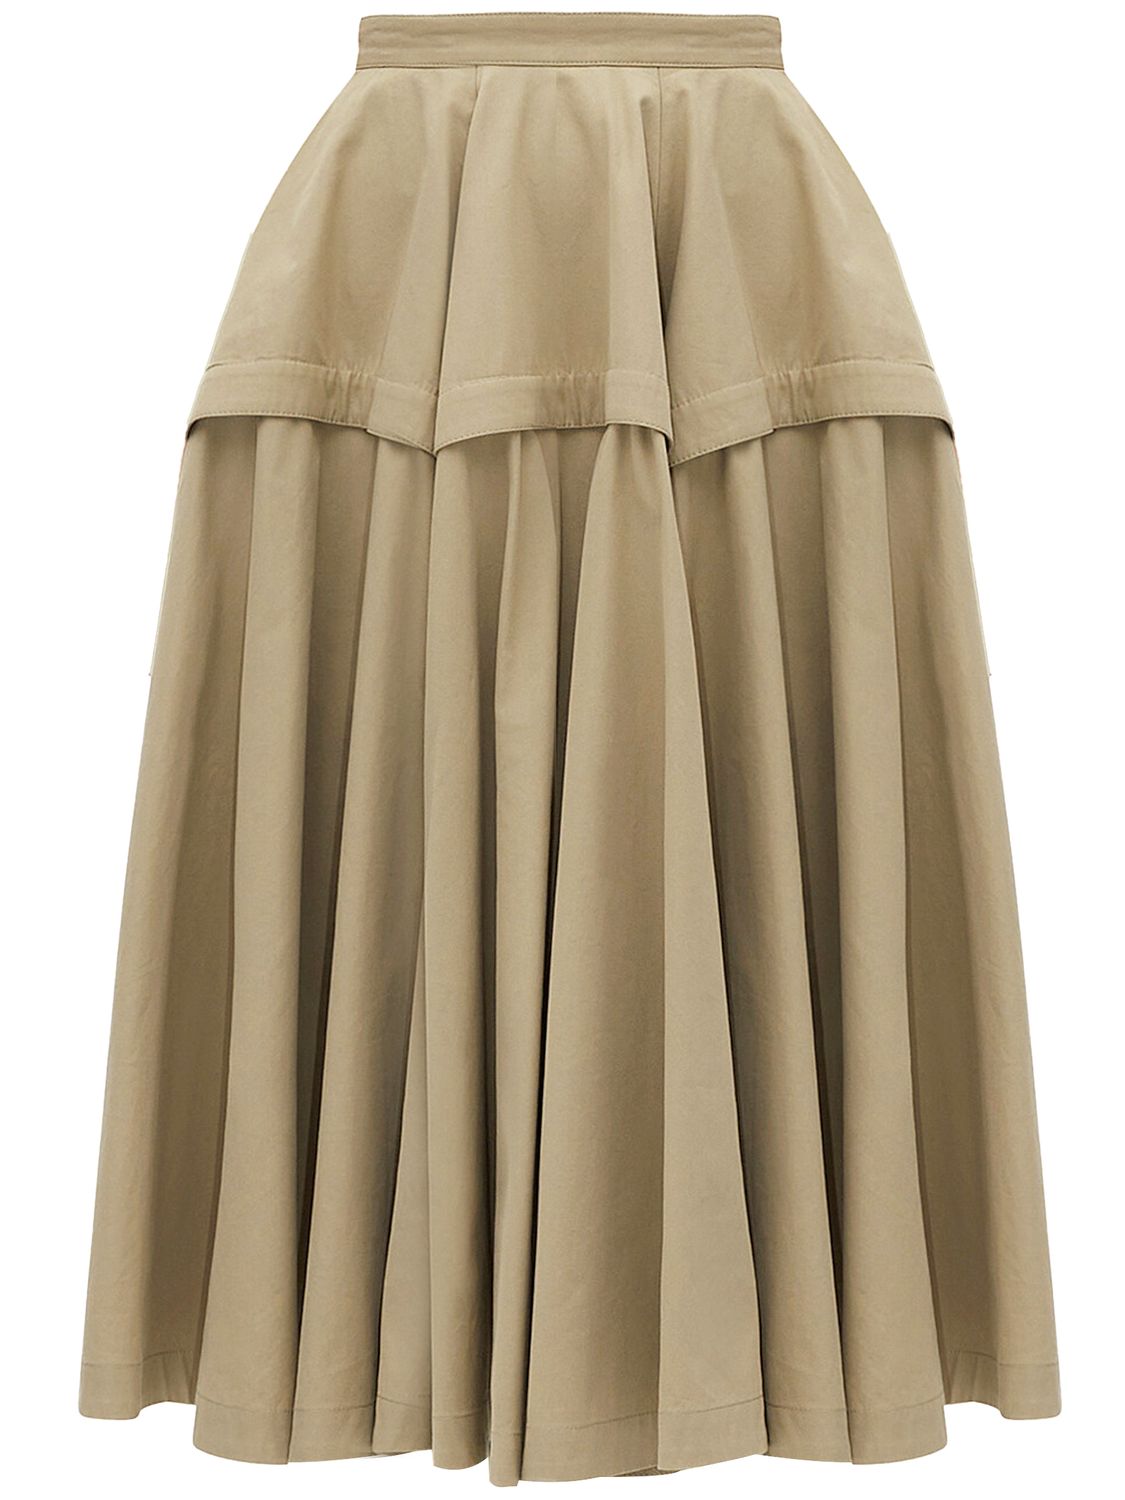 Chân váy A-Line màu cát từ chất liệu bông kỹ thuật compact cho phái đẹp